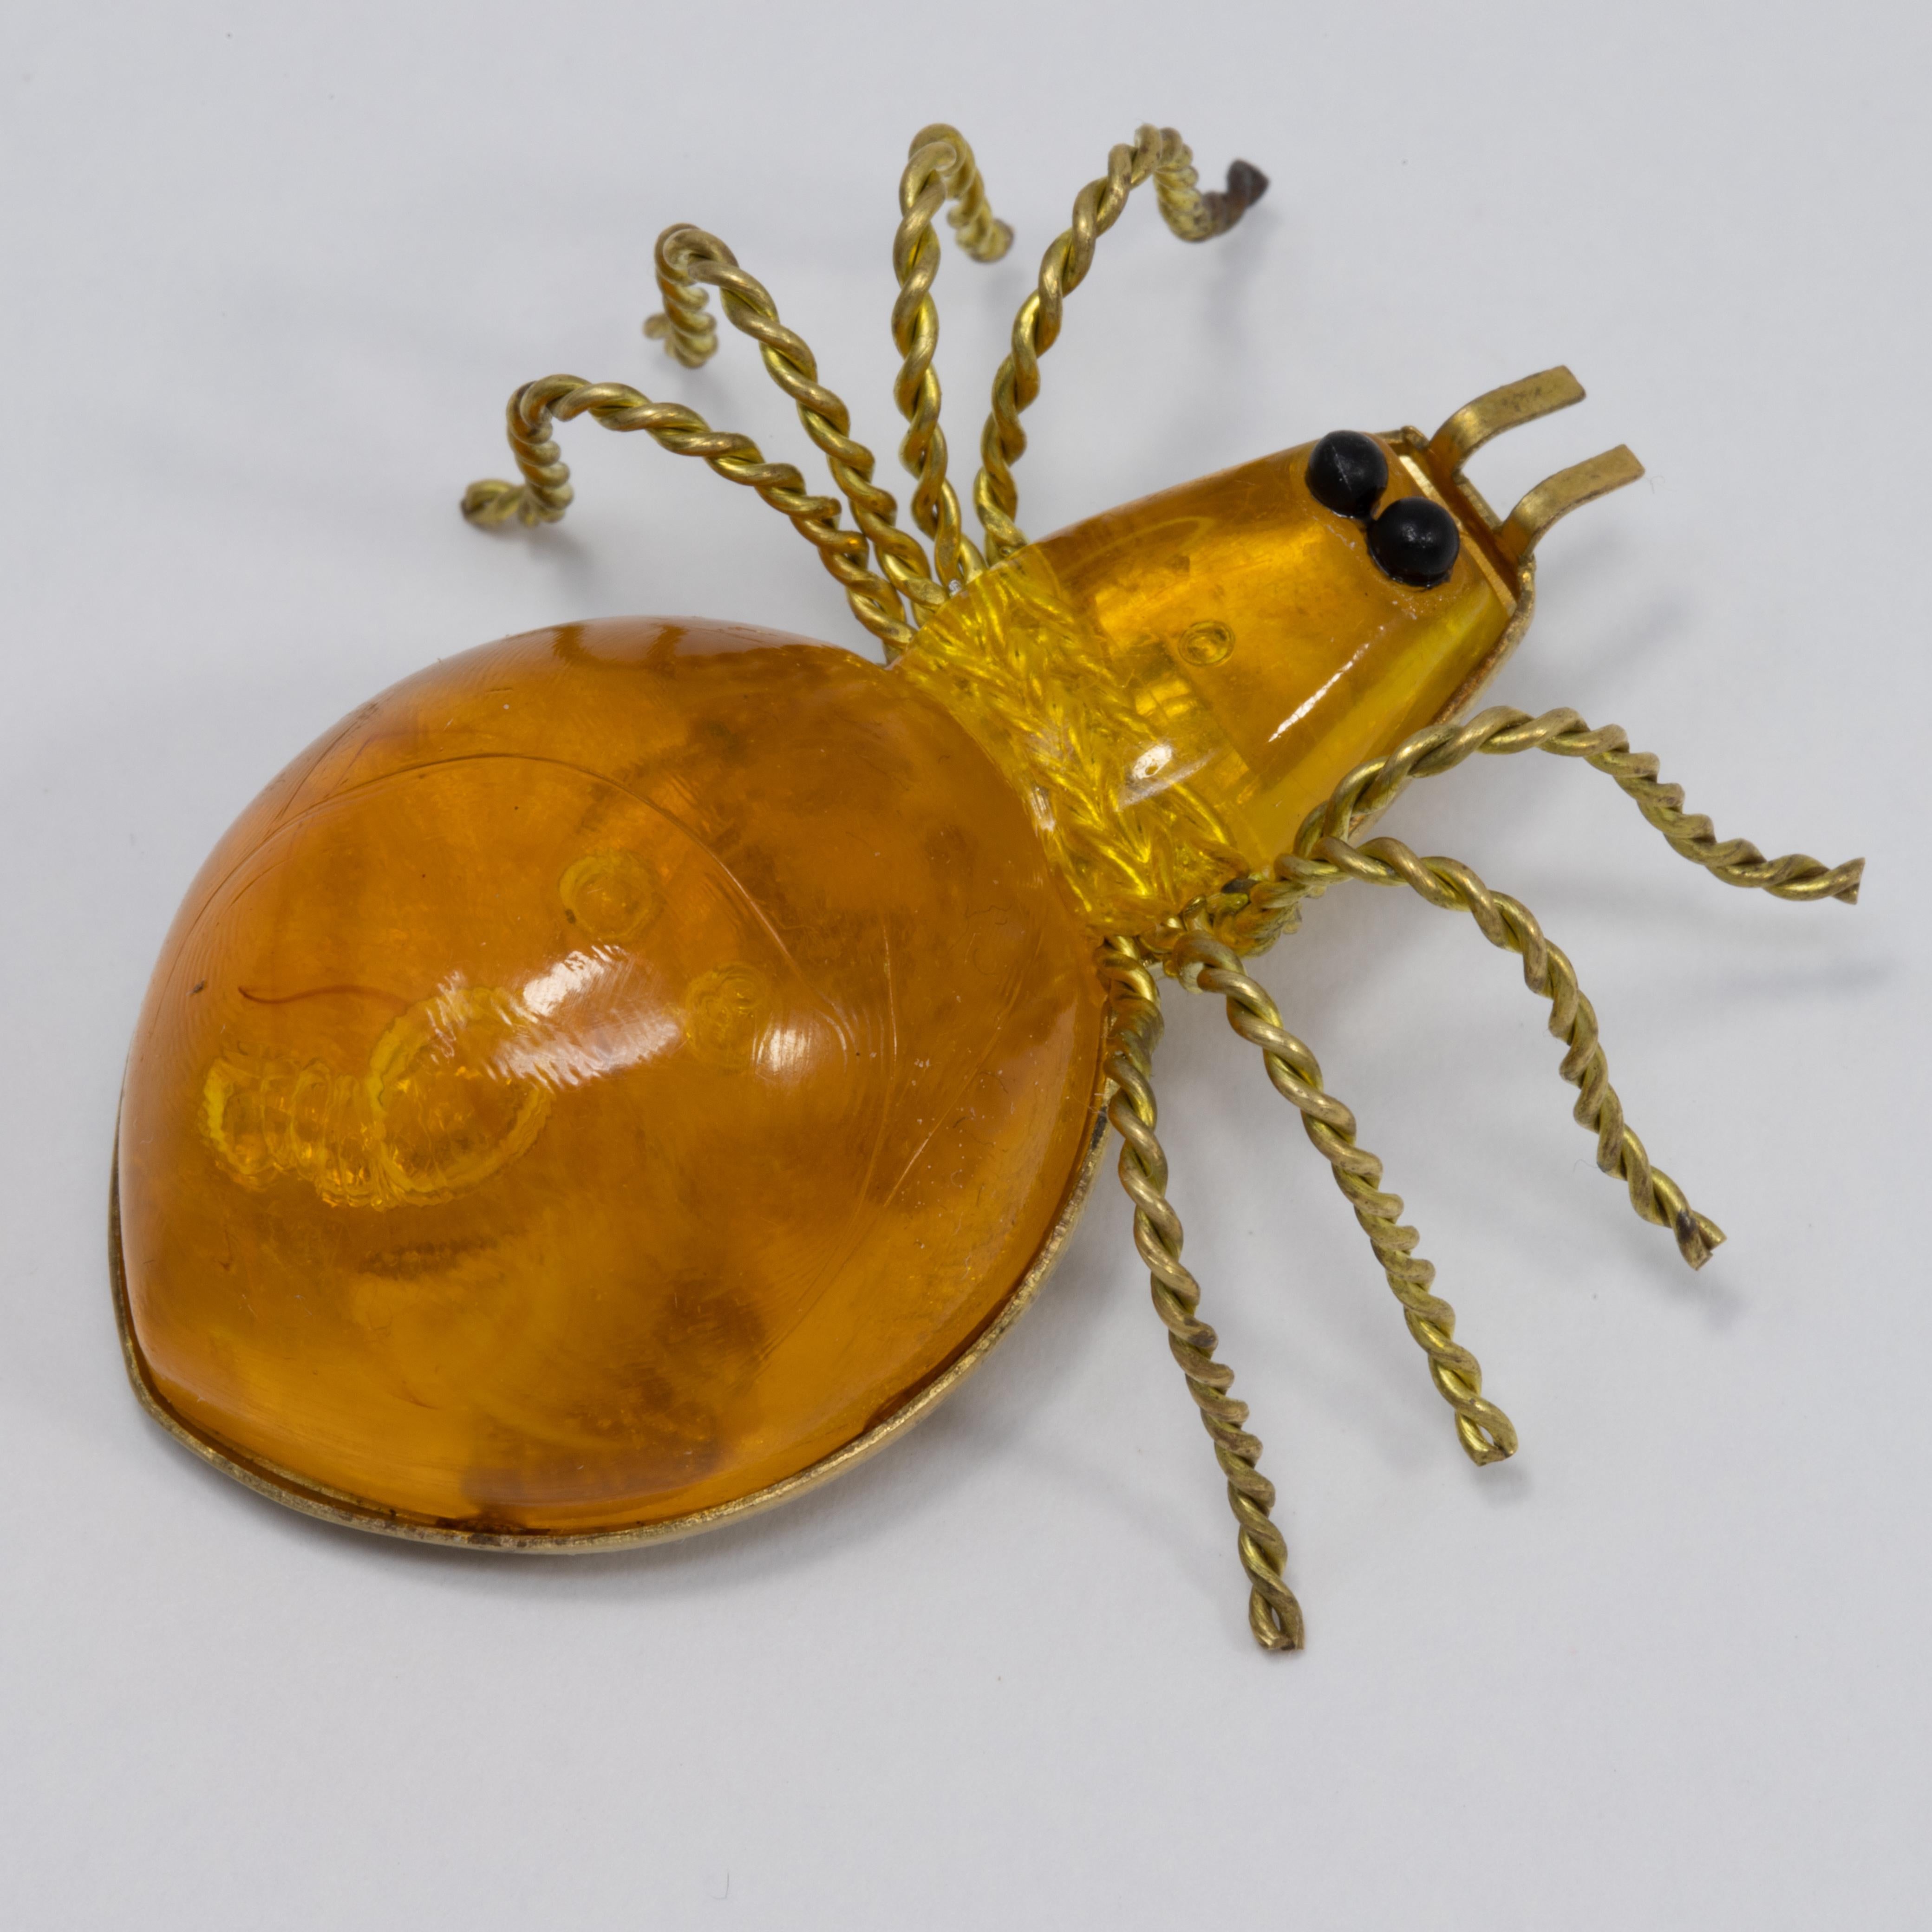 Eine exquisite Spinnen-Brosche. Diese russische Anstecknadel ist das perfekte Accessoire. Sie besteht aus einem Bernsteinkörper in einer goldfarbenen Fassung und ist mit zwei runden schwarzen Augen verziert. Die gedrehten Drahtbeine verleihen ihm